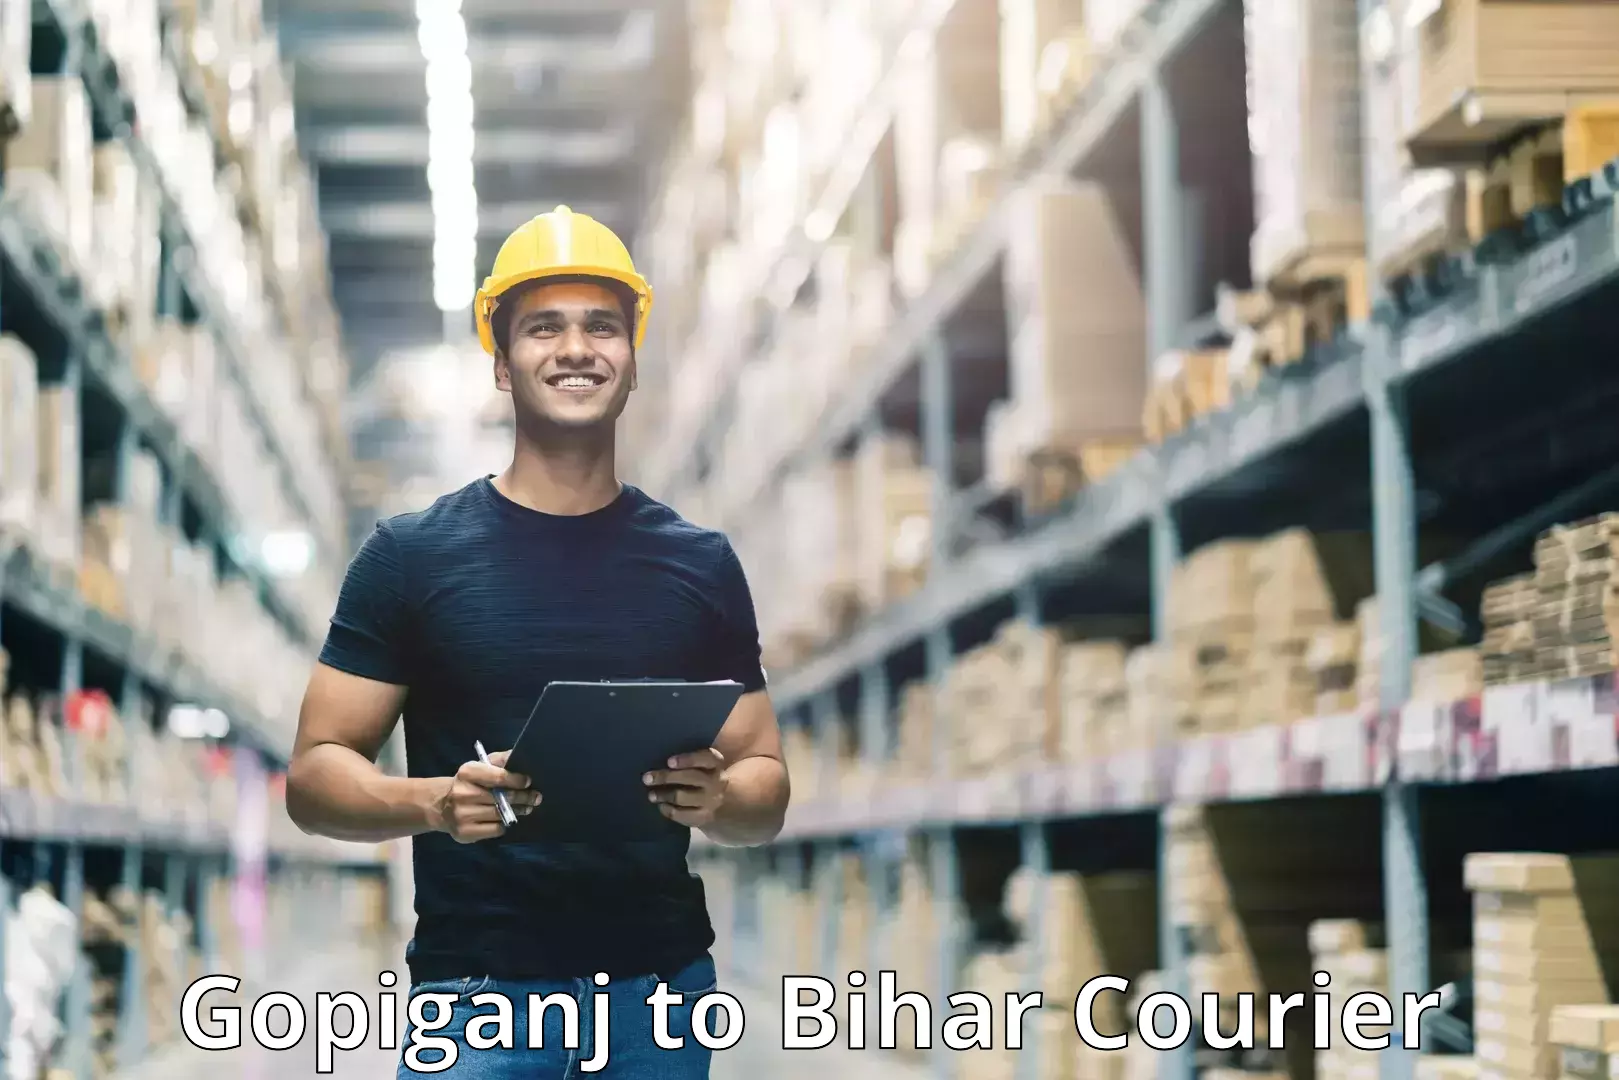 Doorstep delivery service Gopiganj to Bihar